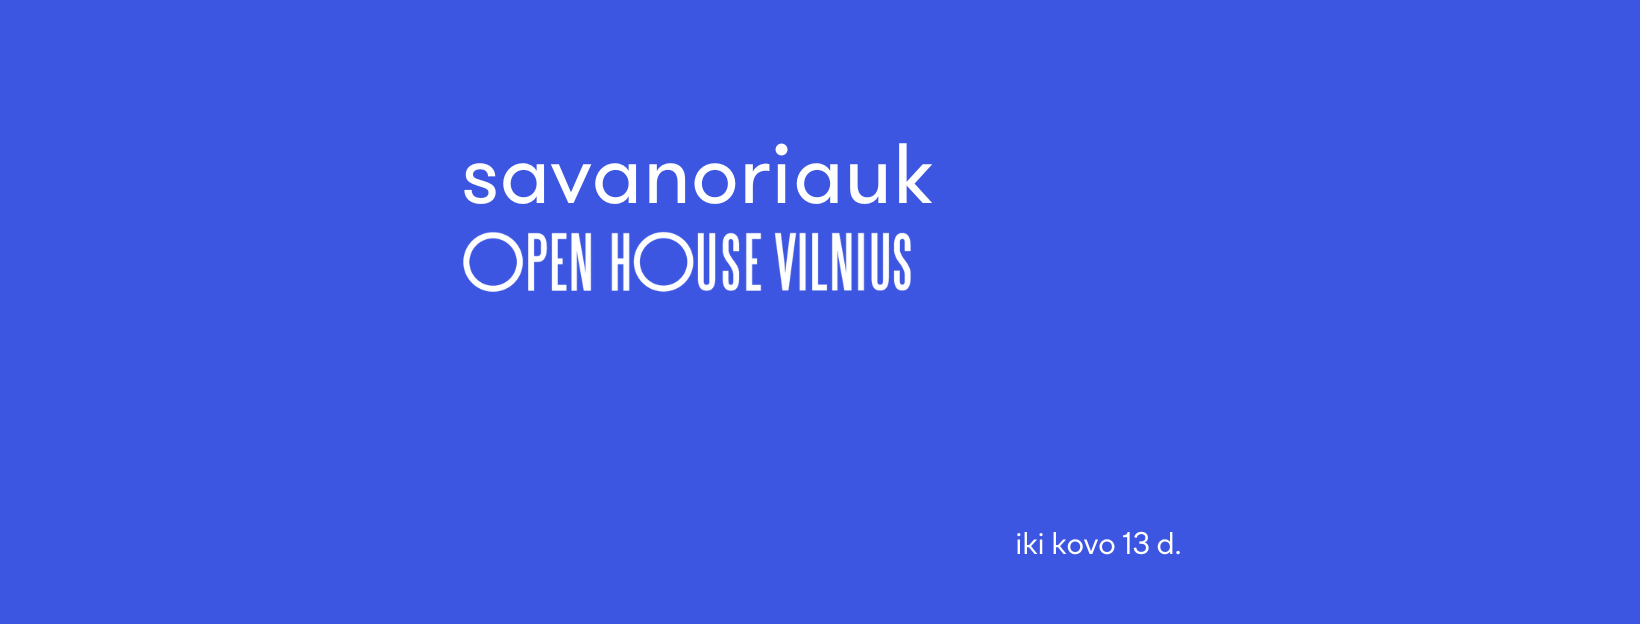 Prisidėti prie Open House Vilnius galite ir jūs – renginys laukia savanorių